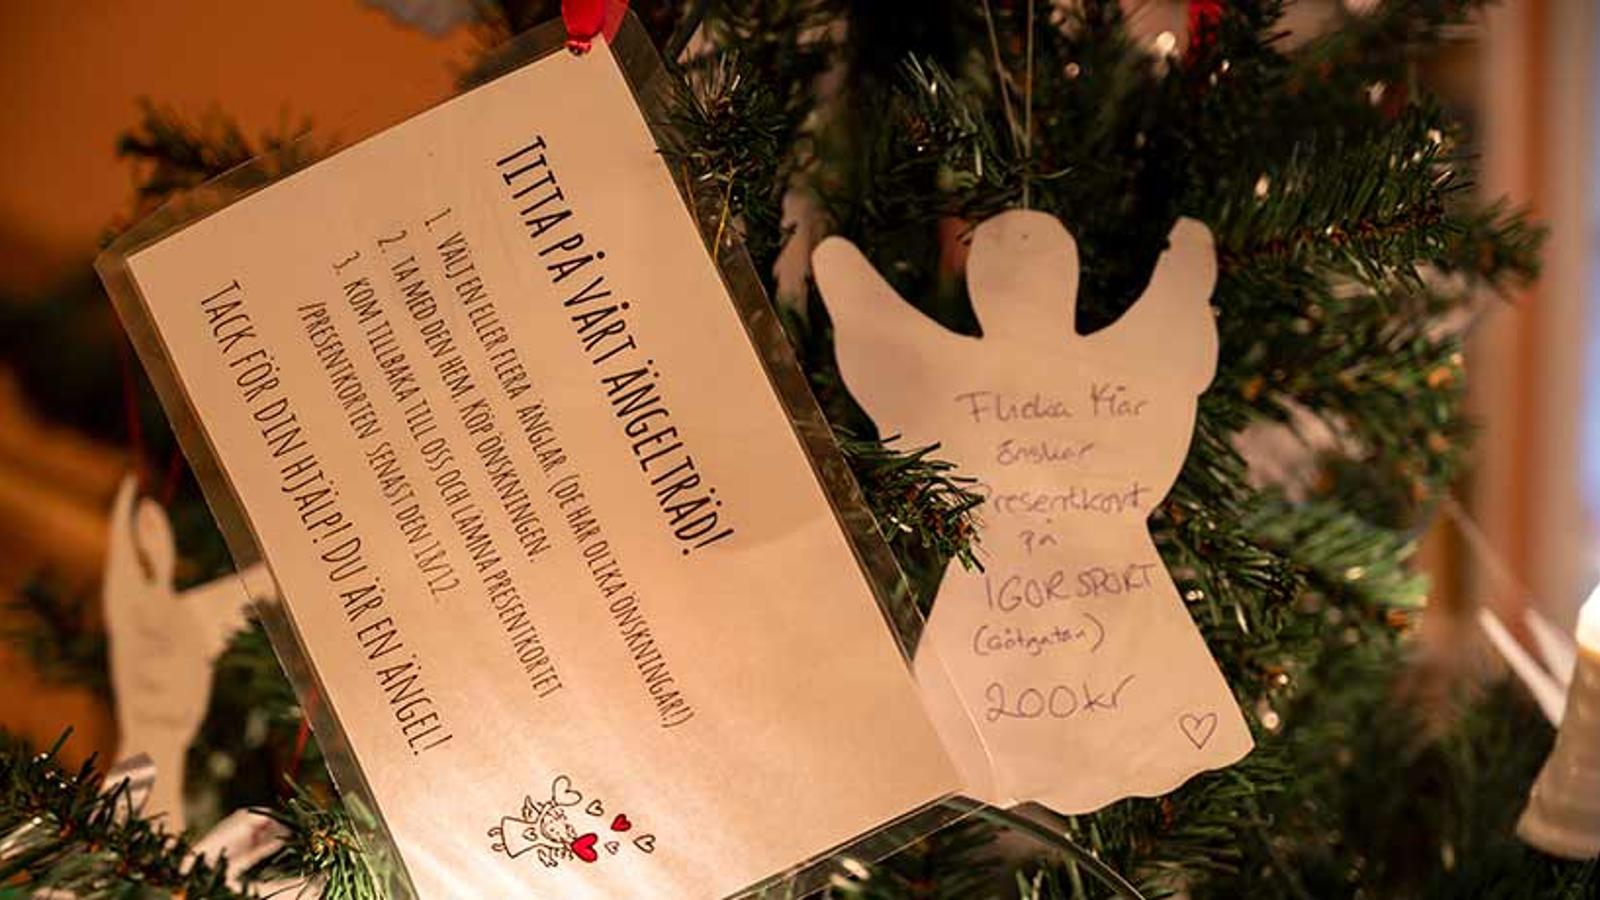 En julgran med ängelkort med text: "Flicka 14 år önskar presentkort på IGOR SPORT 200 kr".